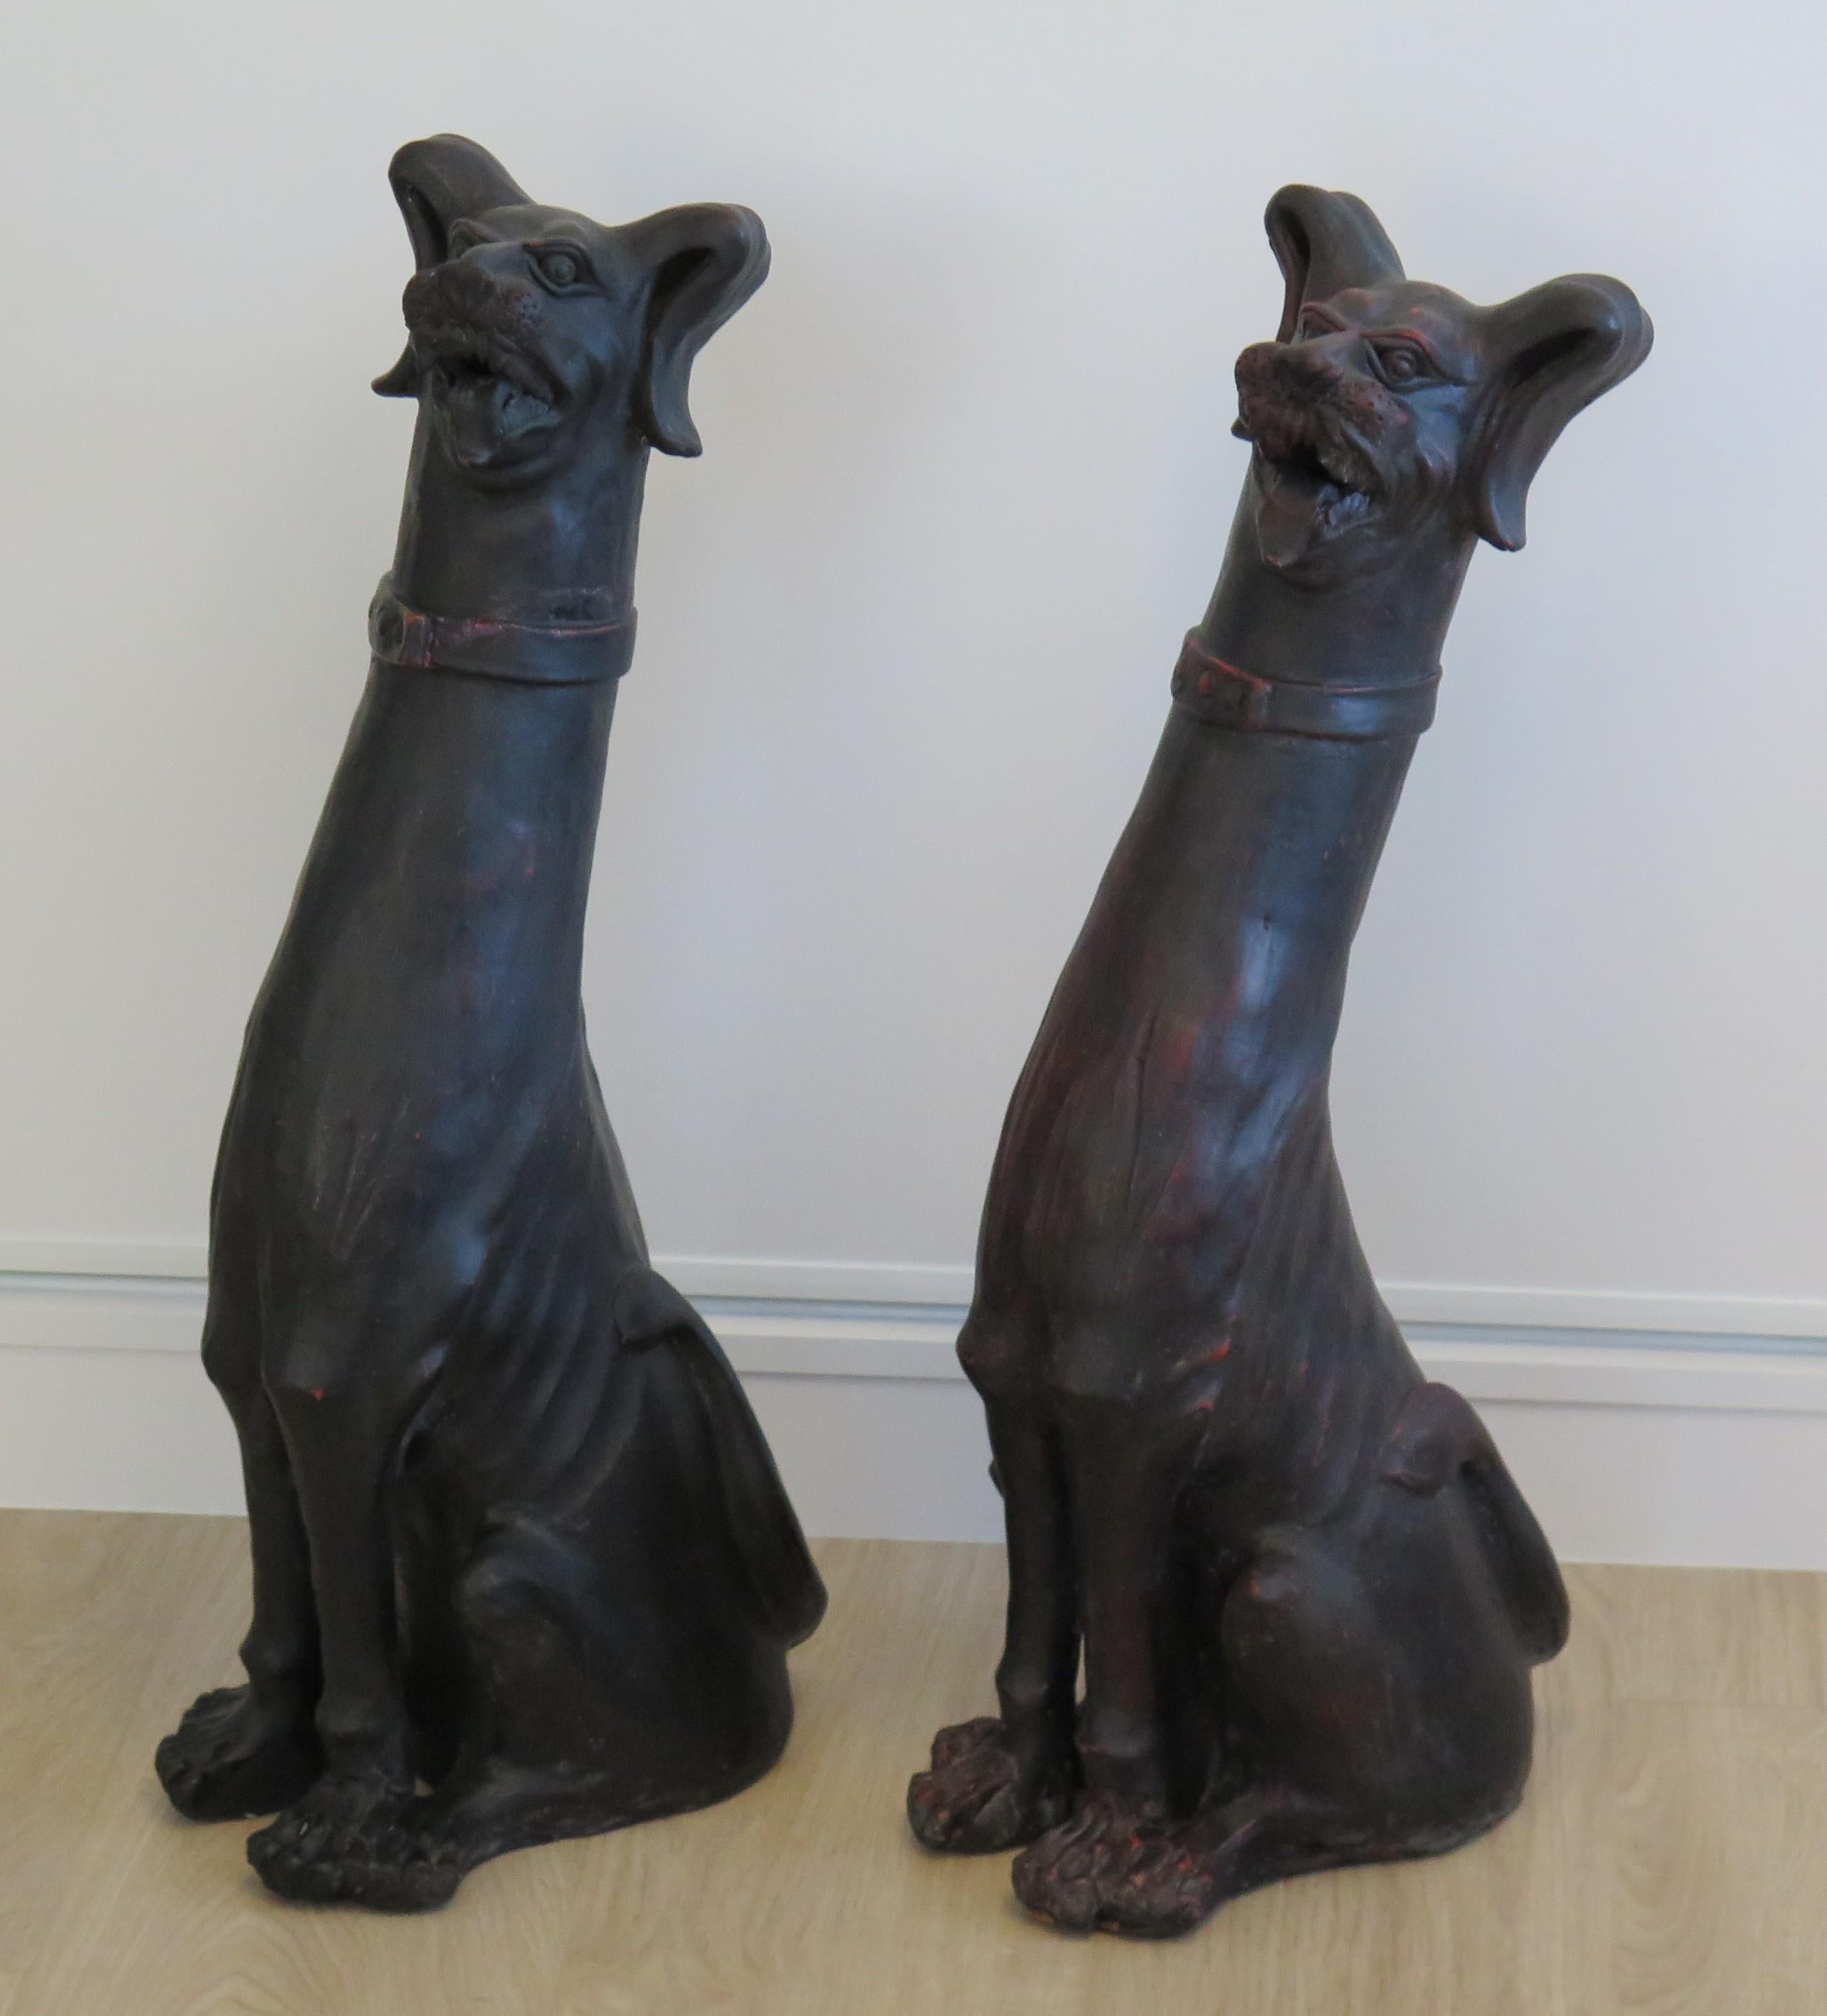 Diese sind ein großes Pärchen von antiken Steingut (oder Terrakotta) Keramik Groteske Hundeskulpturen, alle handgefertigt und aus dem 19. Jahrhundert, wahrscheinlich in Italien gemacht.

Diese lebensgroßen Skulpturen (fast 27 Zentimeter hoch) sind